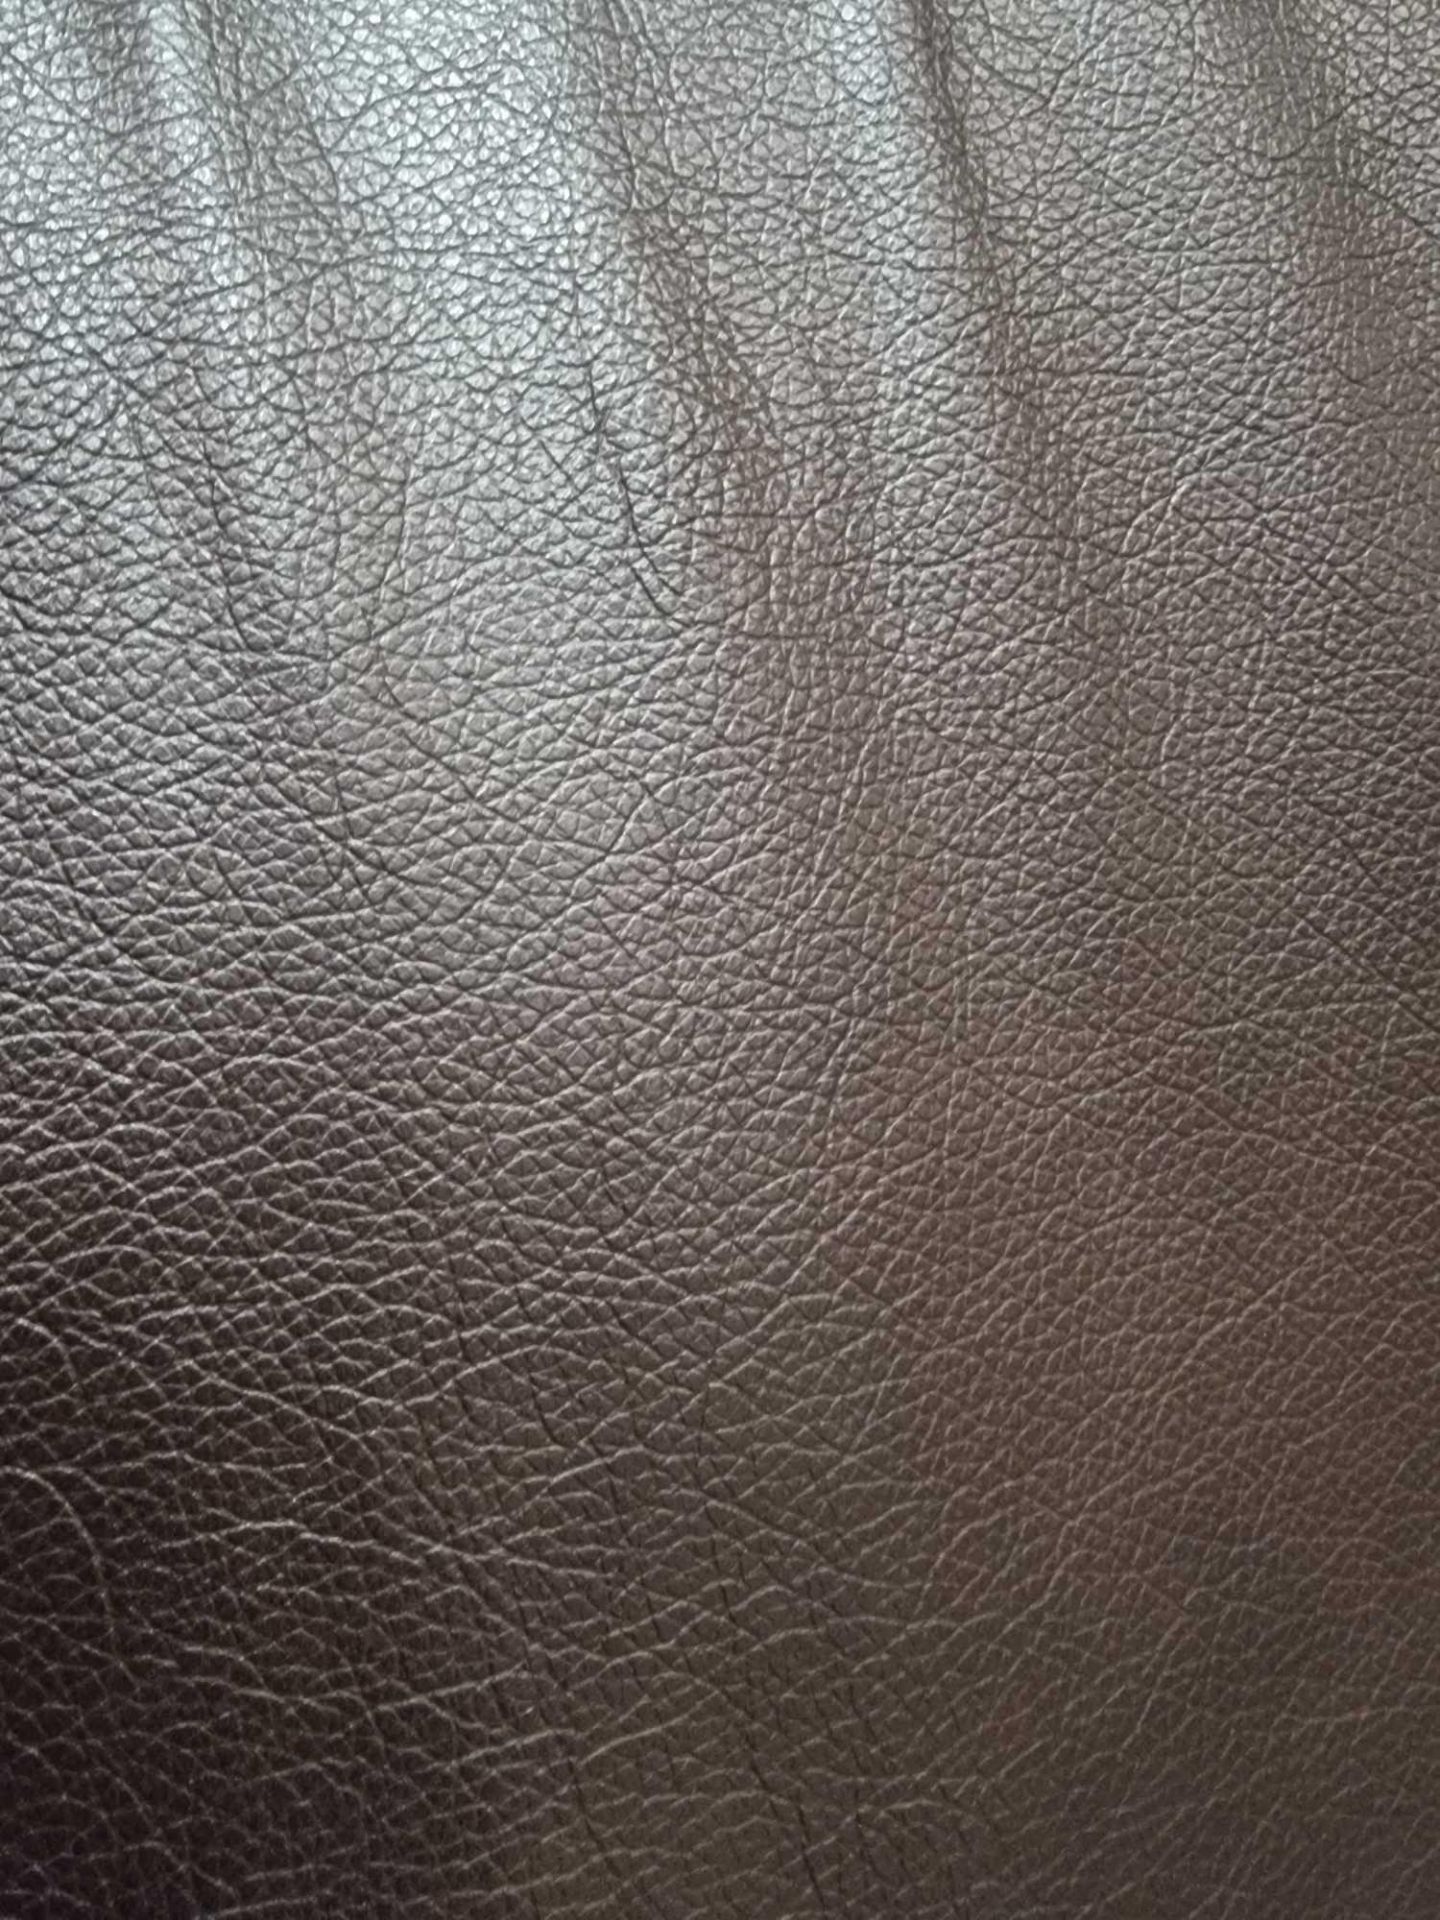 Chocolate Leather Hide approximately 5.04mÂ² 2.4 x 2.1cm ( Hide No,134) - Bild 2 aus 2